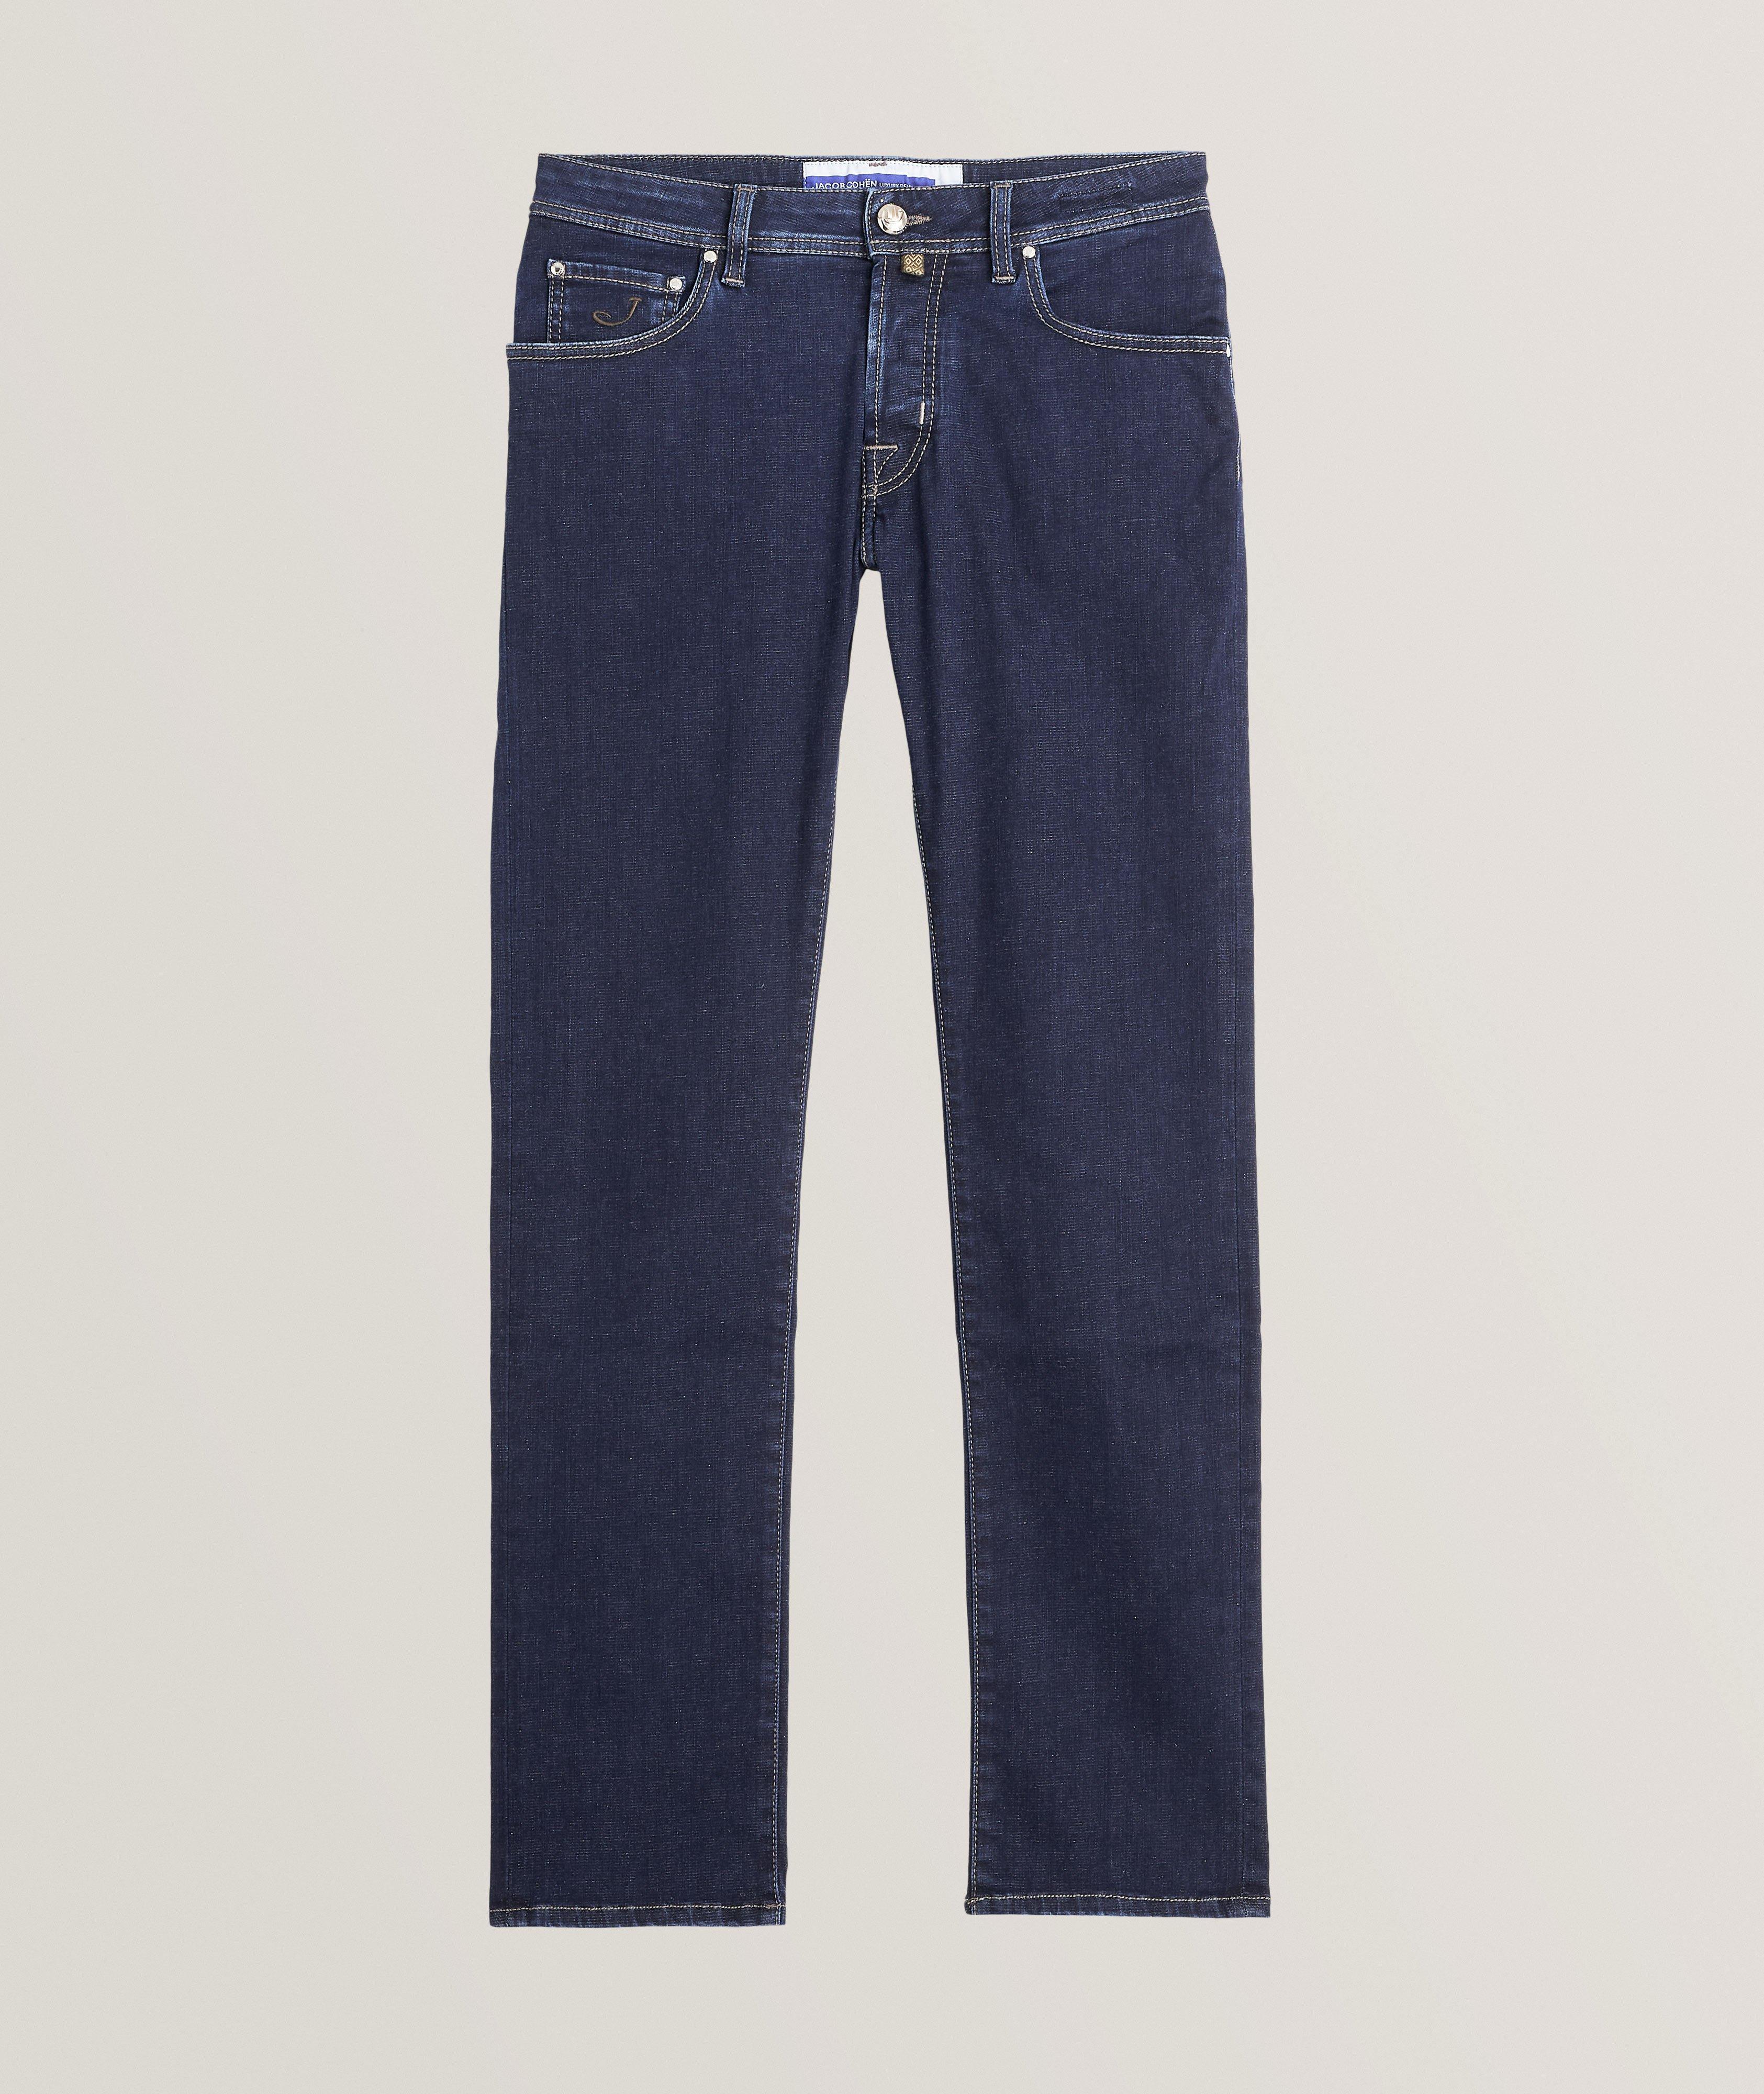 Jacob Cohen Nick Stretch-Cotton Jeans, Jeans